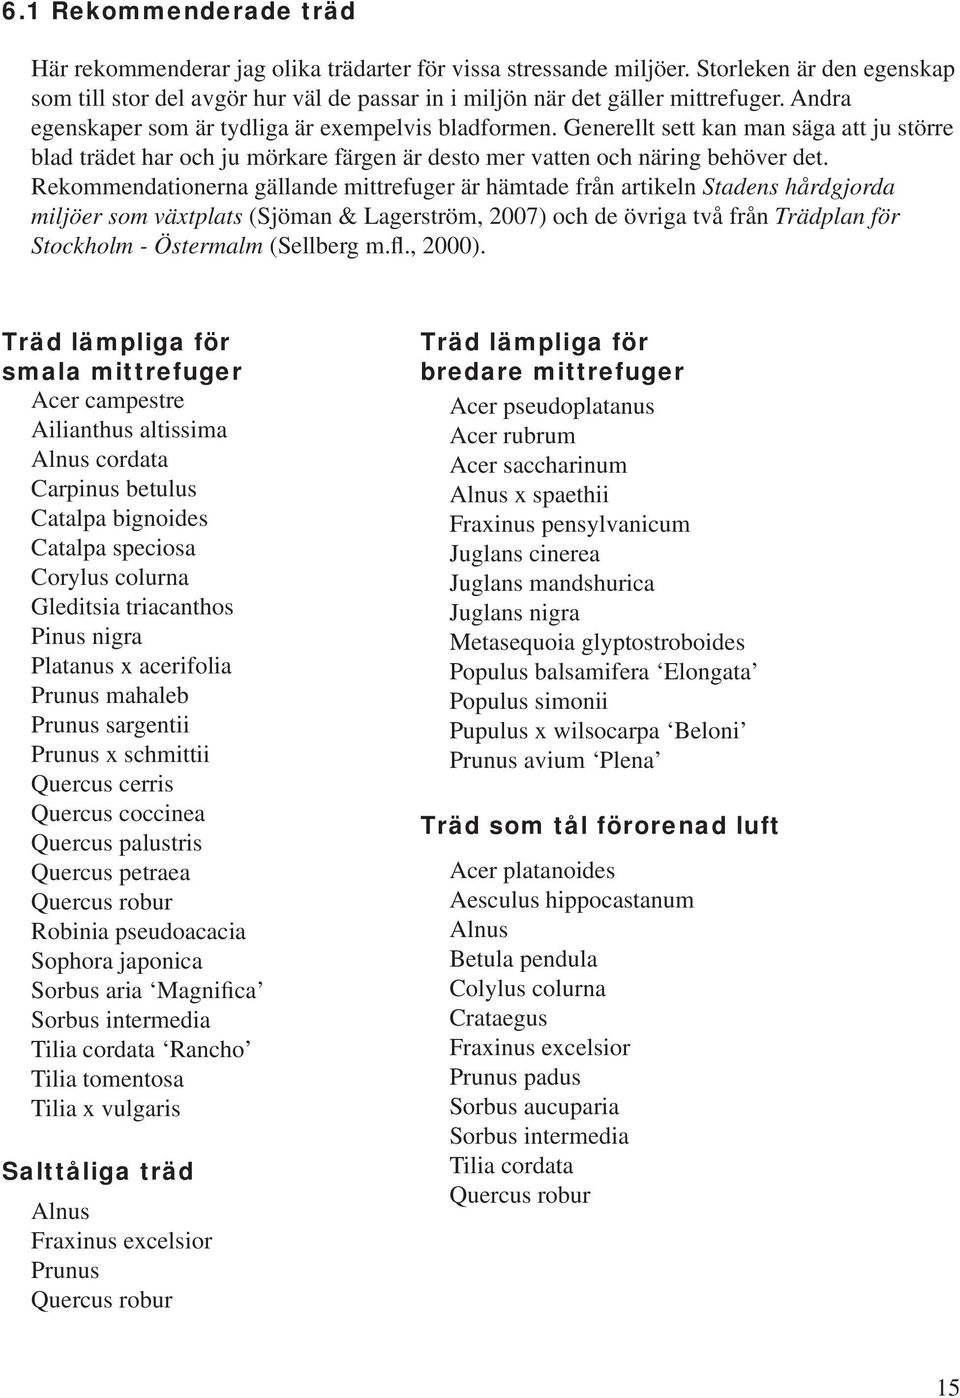 Rekommendationerna gällande mittrefuger är hämtade från artikeln Stadens hårdgjorda miljöer som växtplats (Sjöman & Lagerström, 2007) och de övriga två från Trädplan för Stockholm - Östermalm